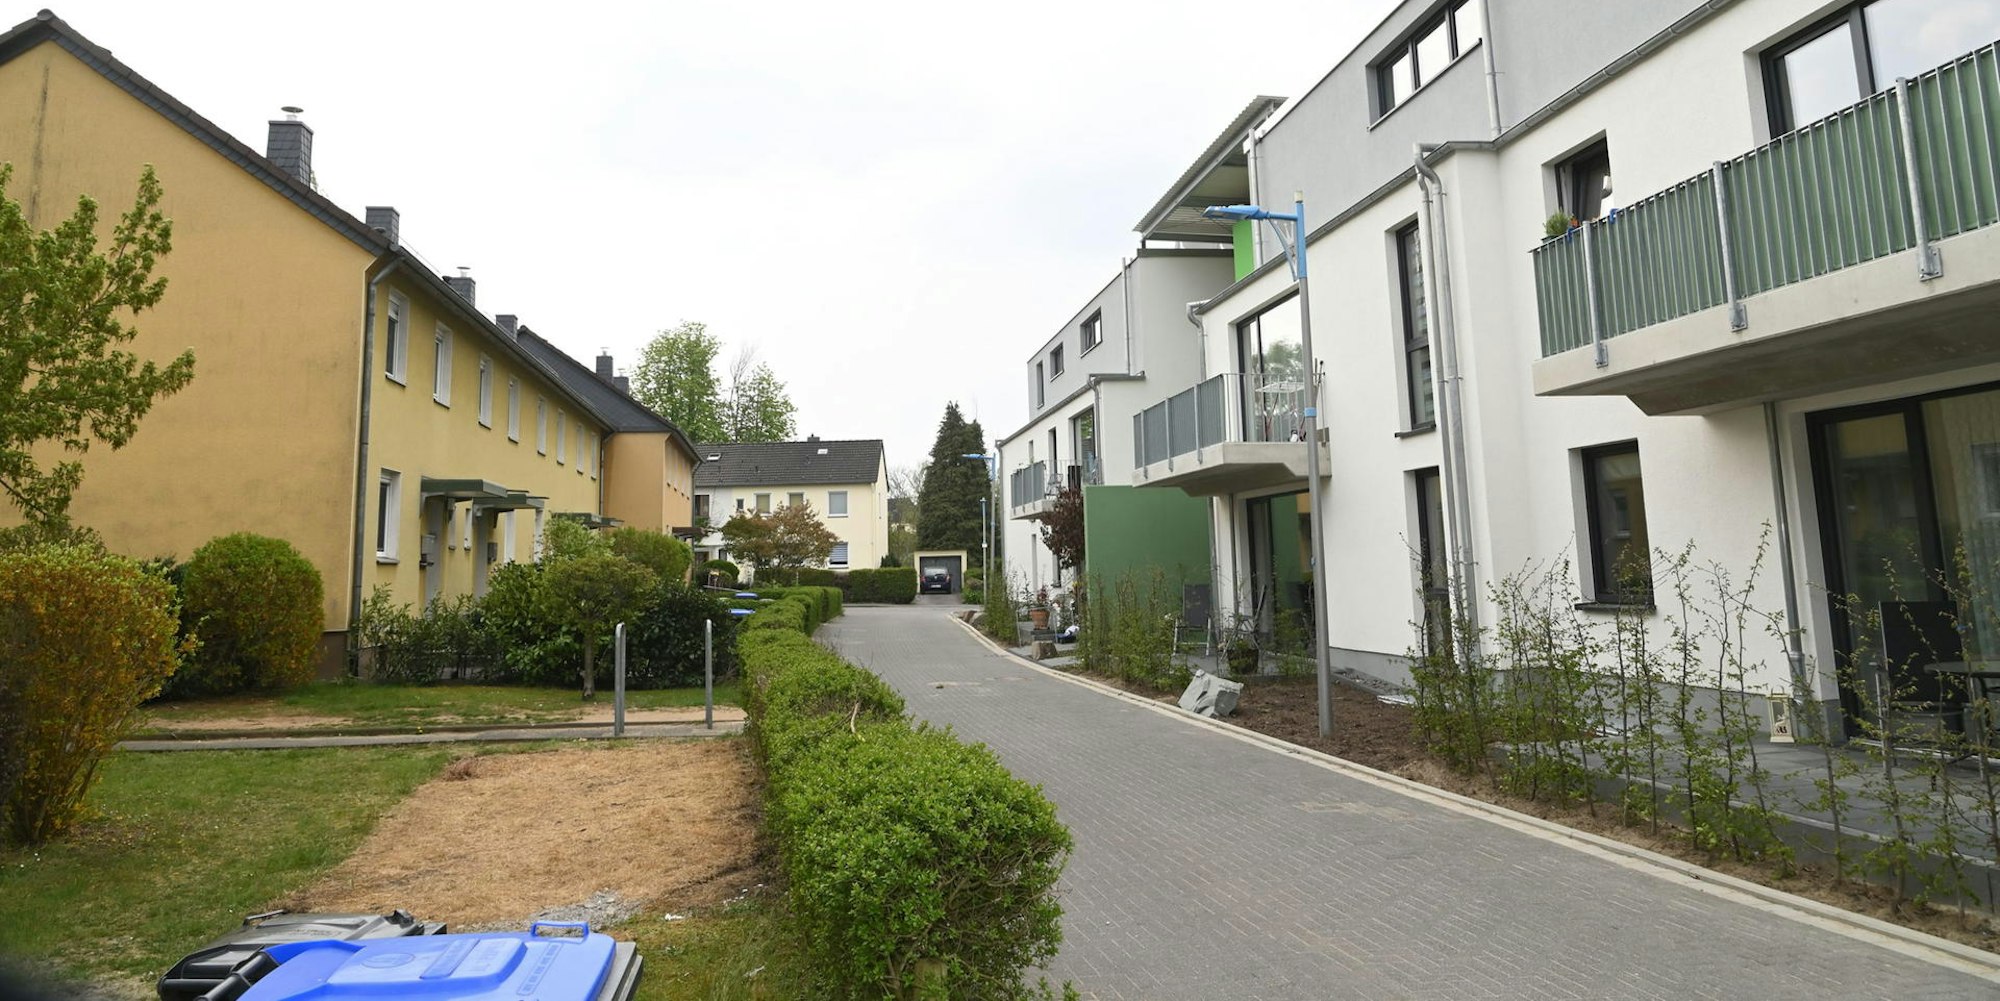 Sozialer Wohnungsbau bleibt in moderner Bauform und -ausstattung (r.) in der Gladbacher Märchensiedlung erhalten.